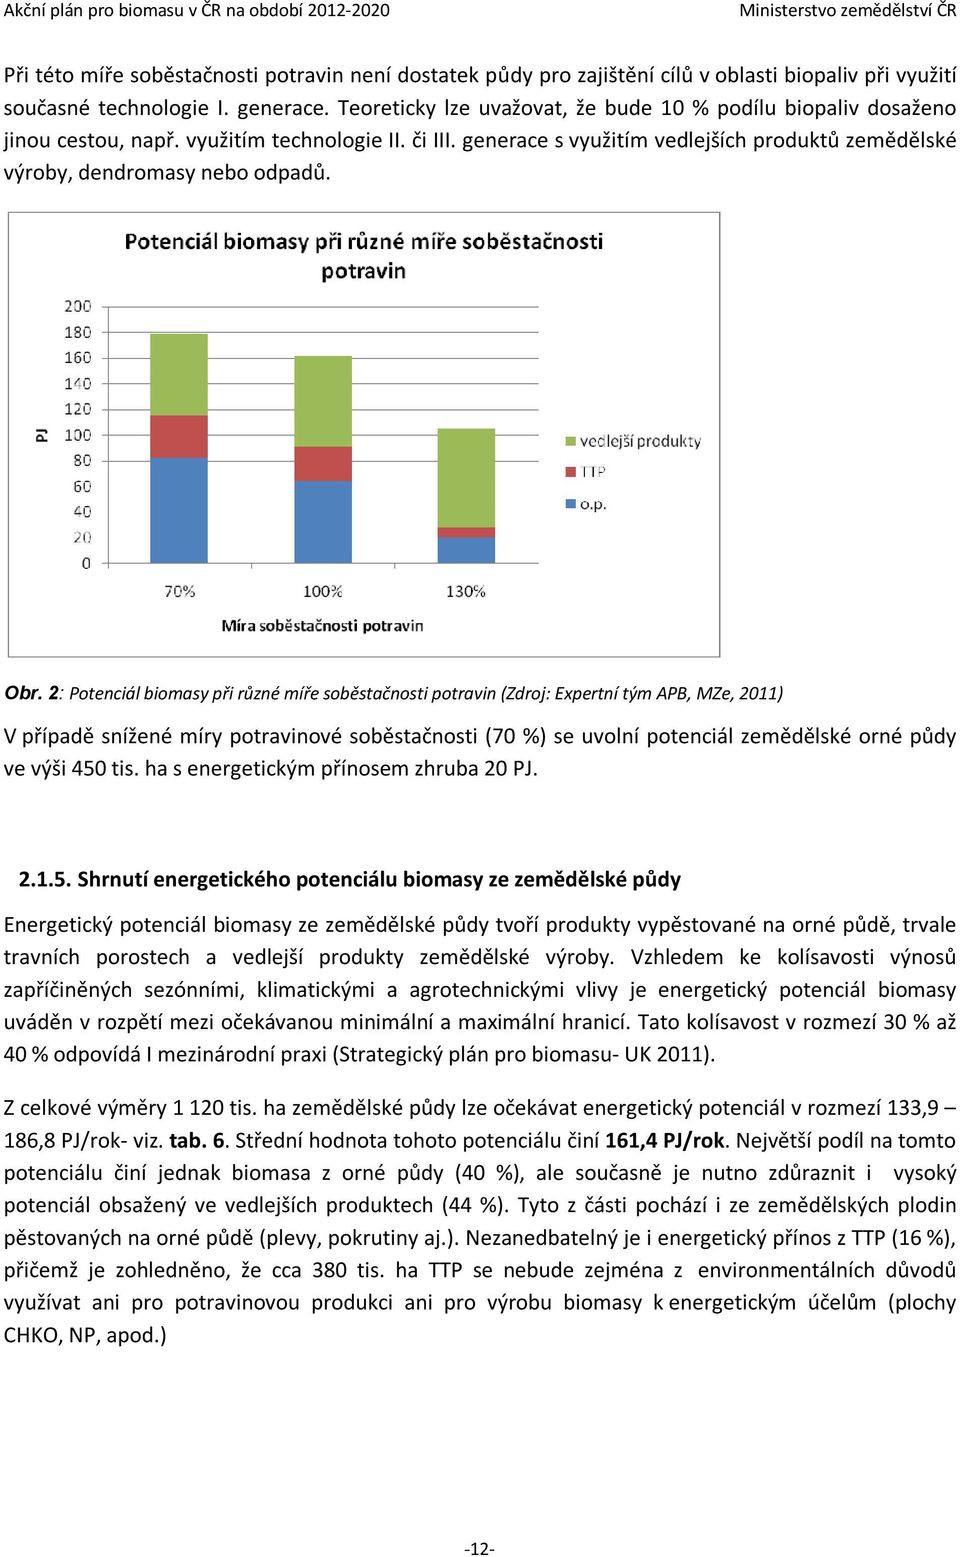 Obr. 2: Potenciál biomasy při různé míře soběstačnosti potravin (Zdroj: Expertní tým APB, MZe, 2011) V případě snížené míry potravinové soběstačnosti (70 %) se uvolní potenciál zemědělské orné půdy